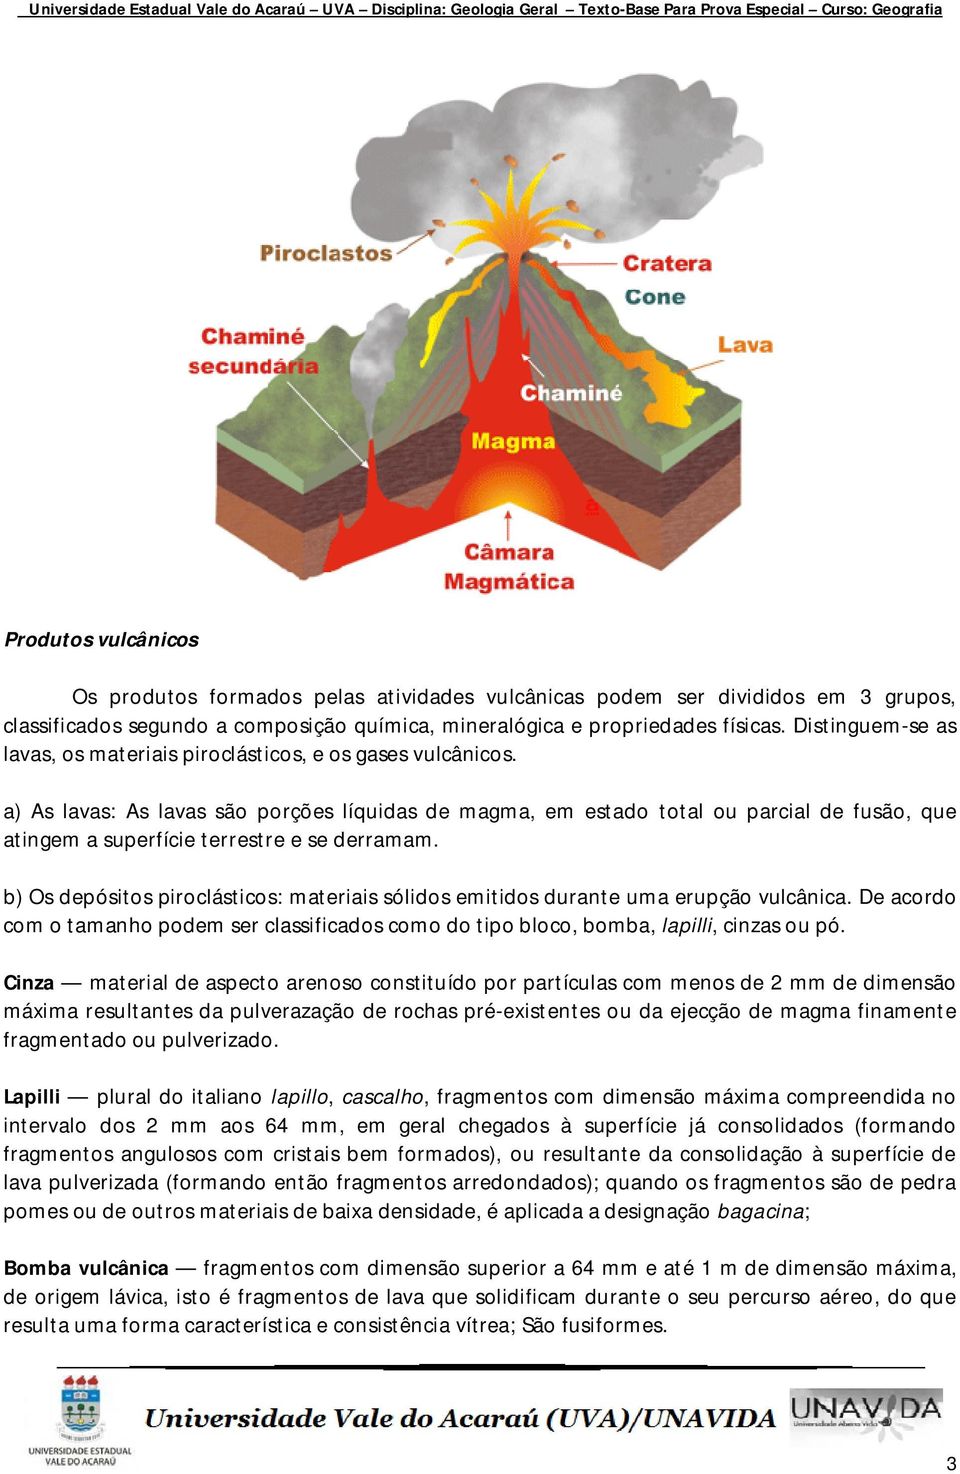 a) As lavas: As lavas são porções líquidas de magma, em estado total ou parcial de fusão, que atingem a superfície terrestre e se derramam.